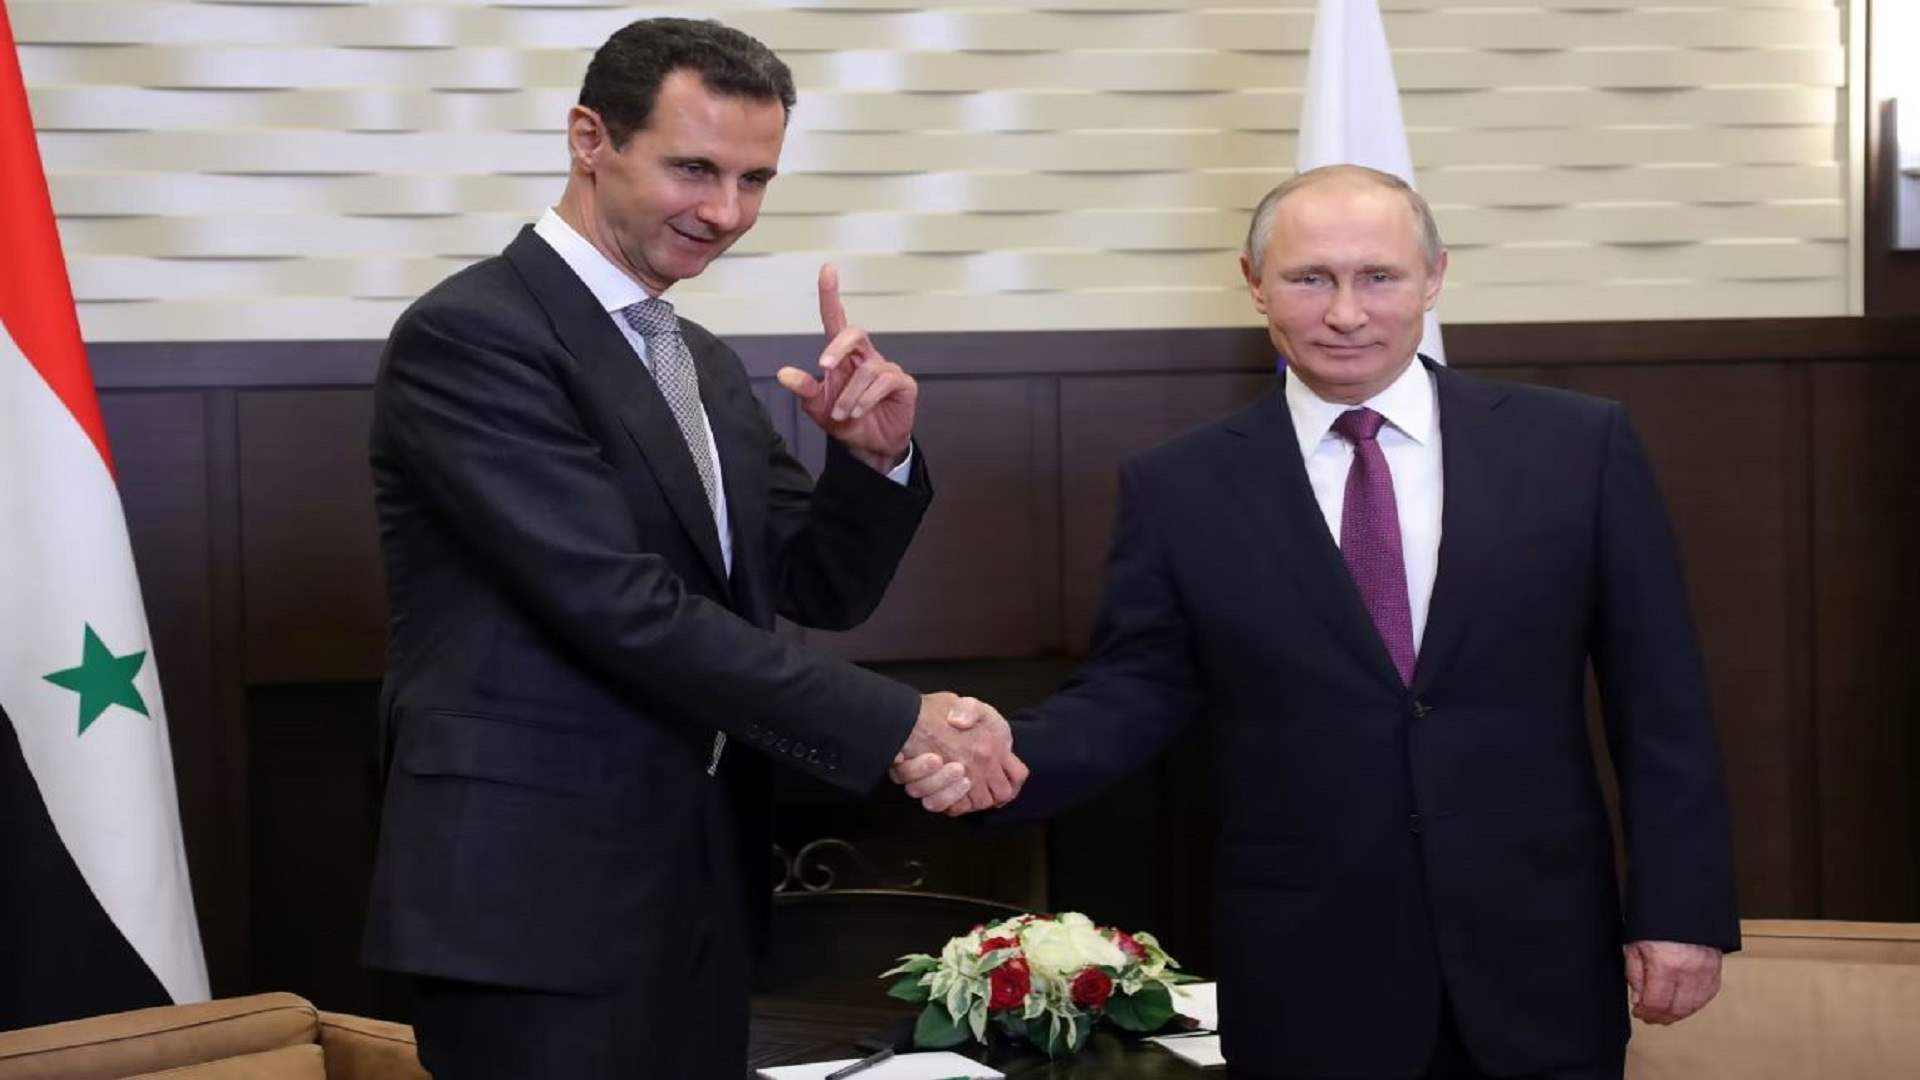 الأسد وبوتين يتبادلان التهاني بمناسبة الذكرى الثمانين لإقامة العلاقات الدبلوماسية بين سوريا وروسيا